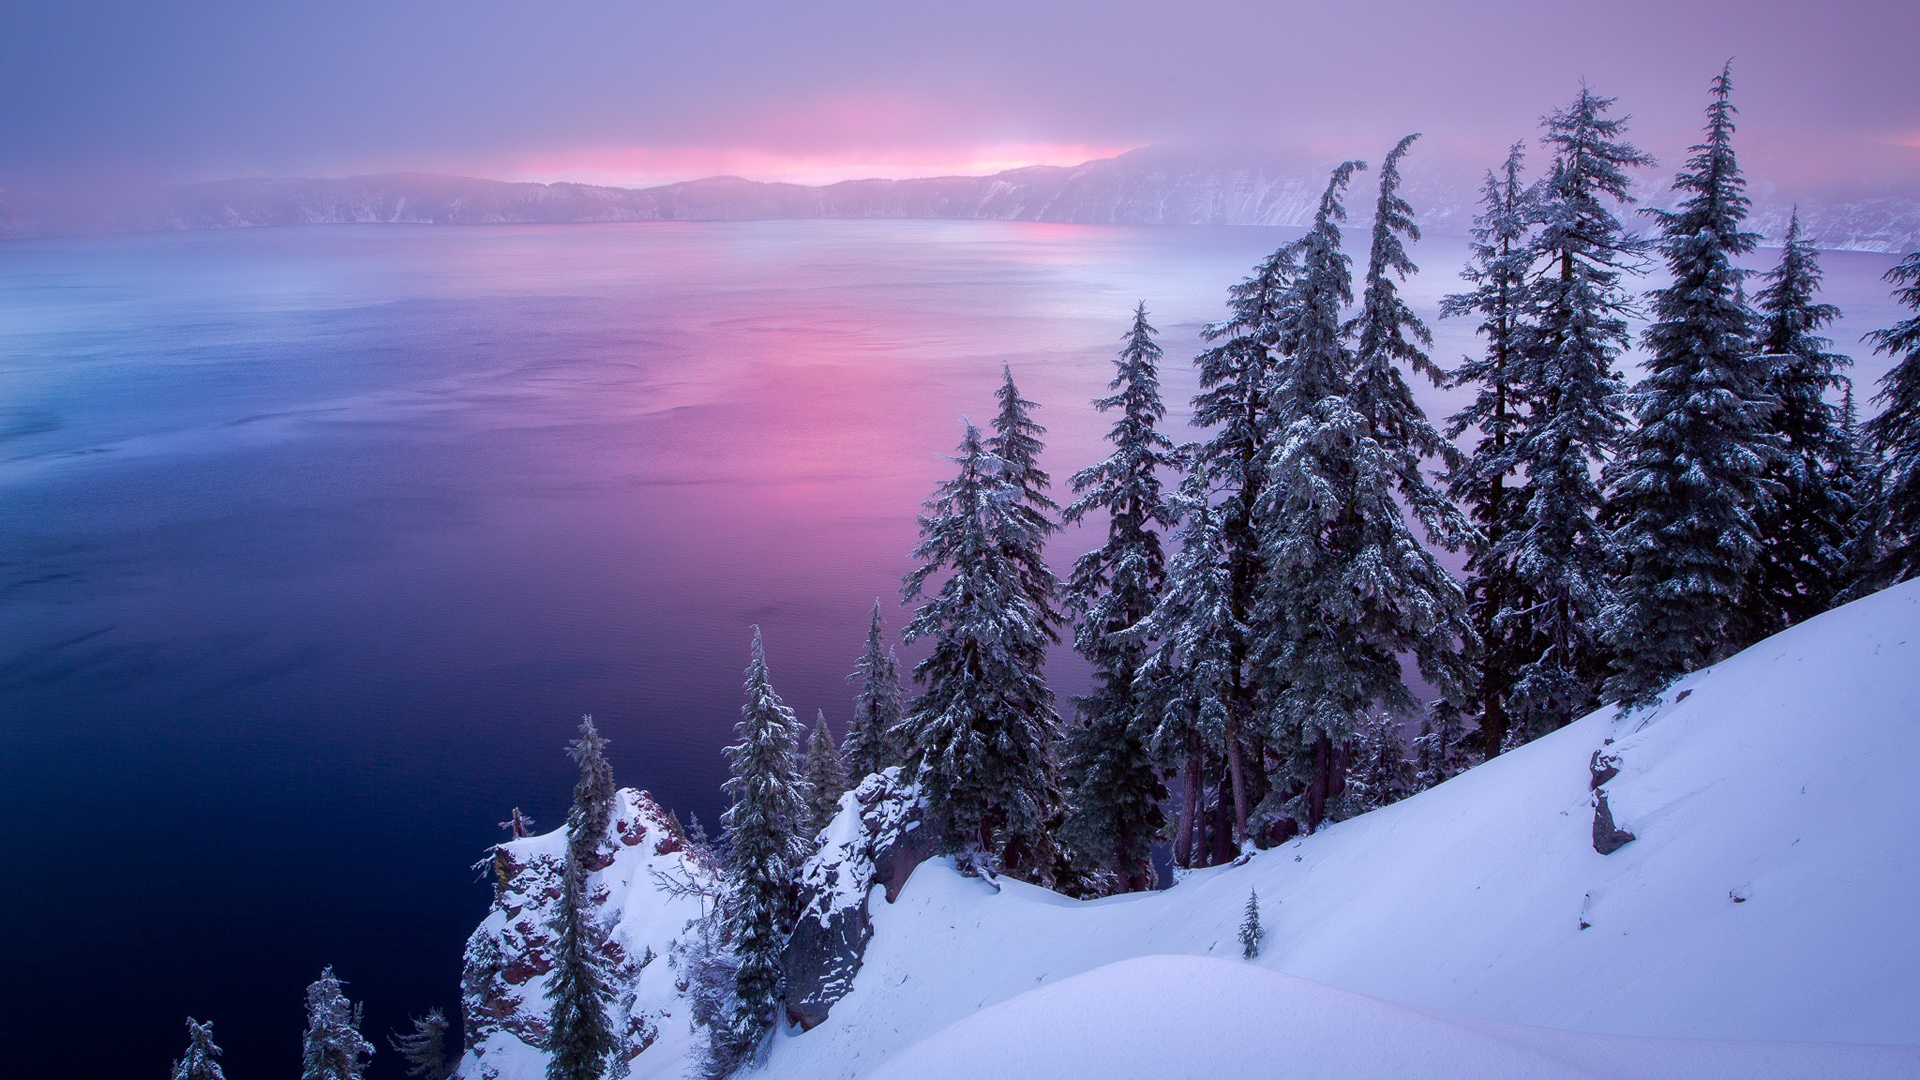 冬天最美的风景图片图片